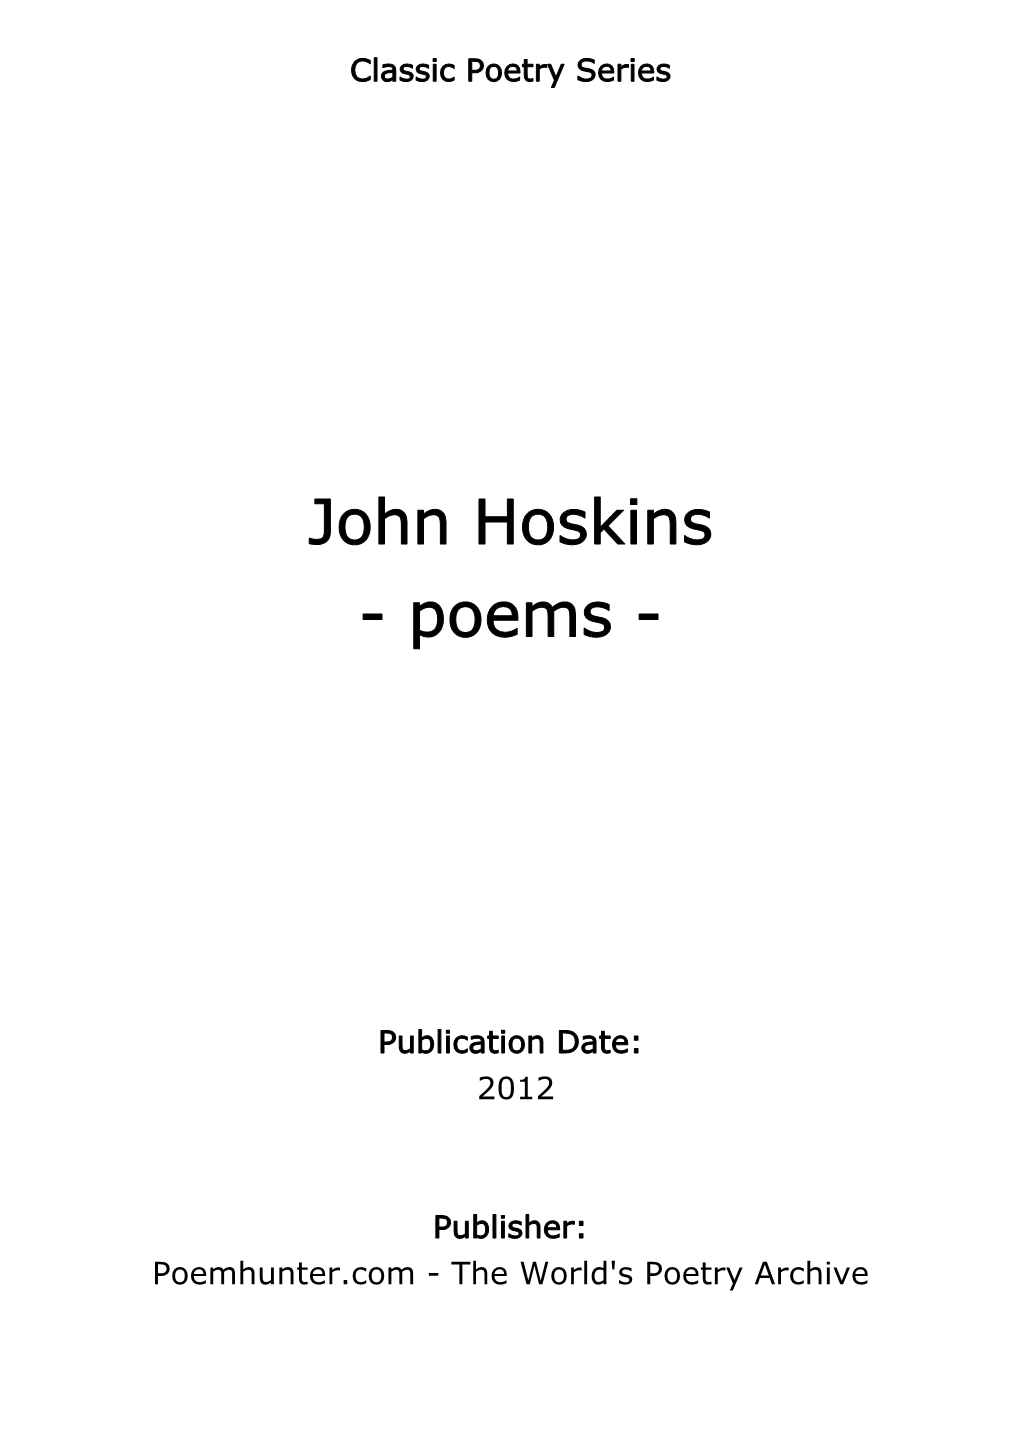 John Hoskins - Poems